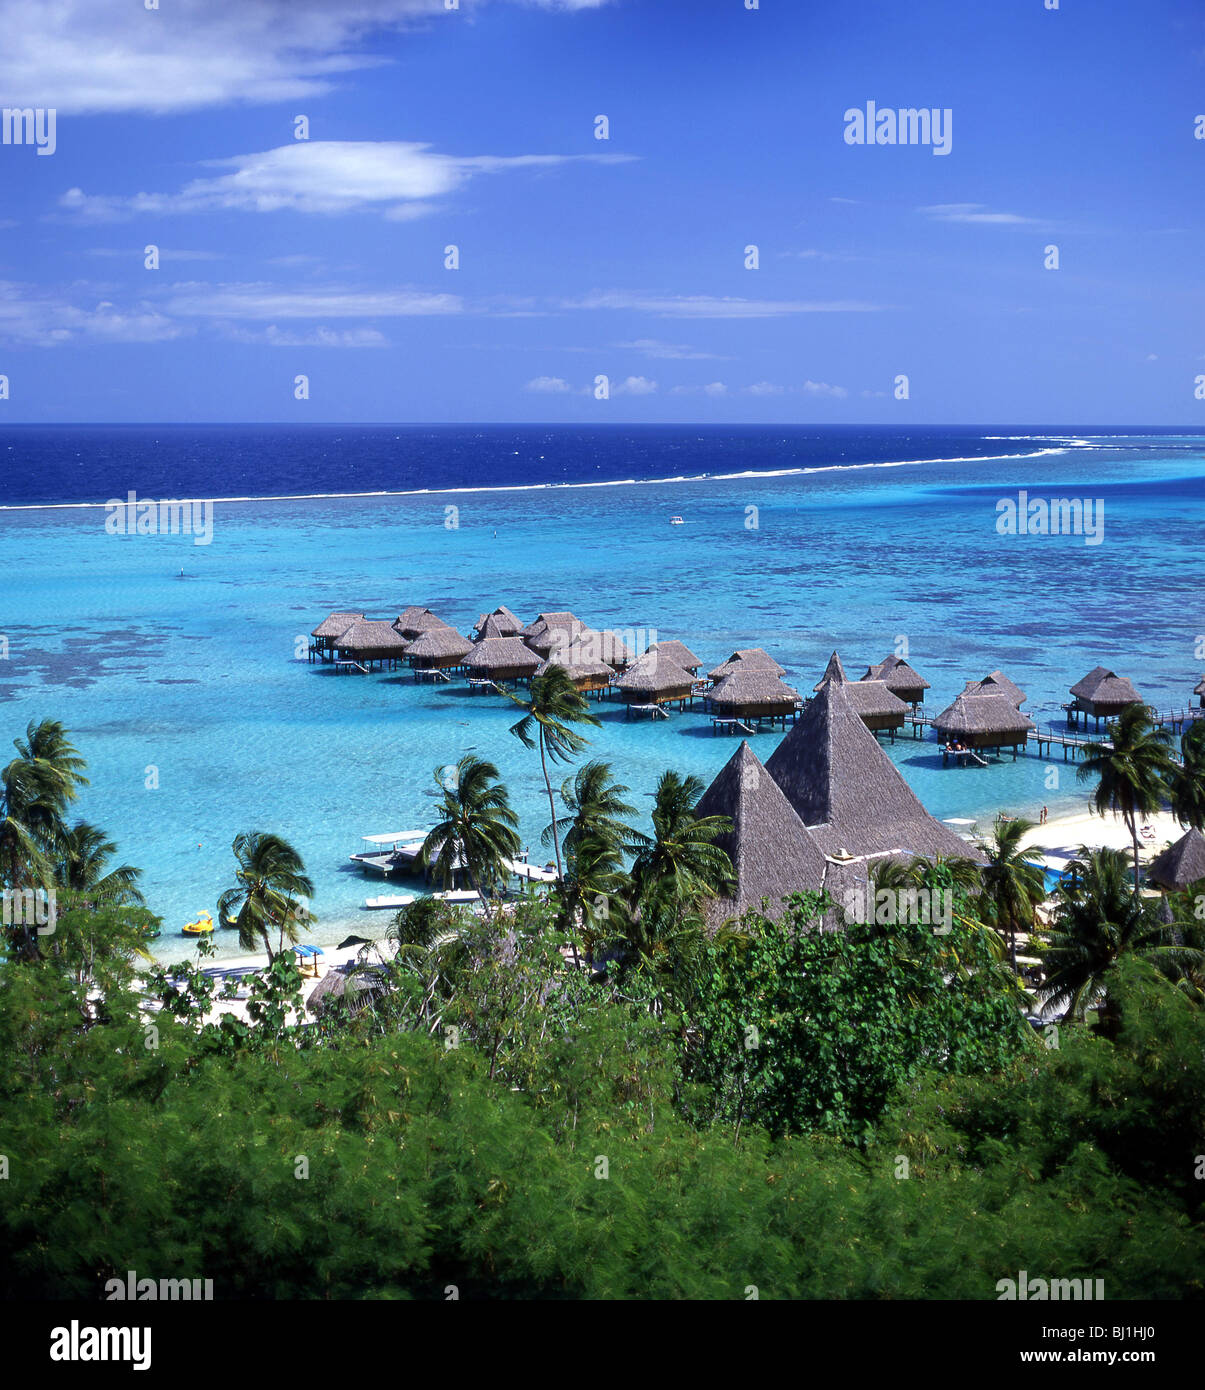 Avis de cabines sur mer, hôtel Sofitel, Moorea, Tahiti, Polynésie Française Banque D'Images